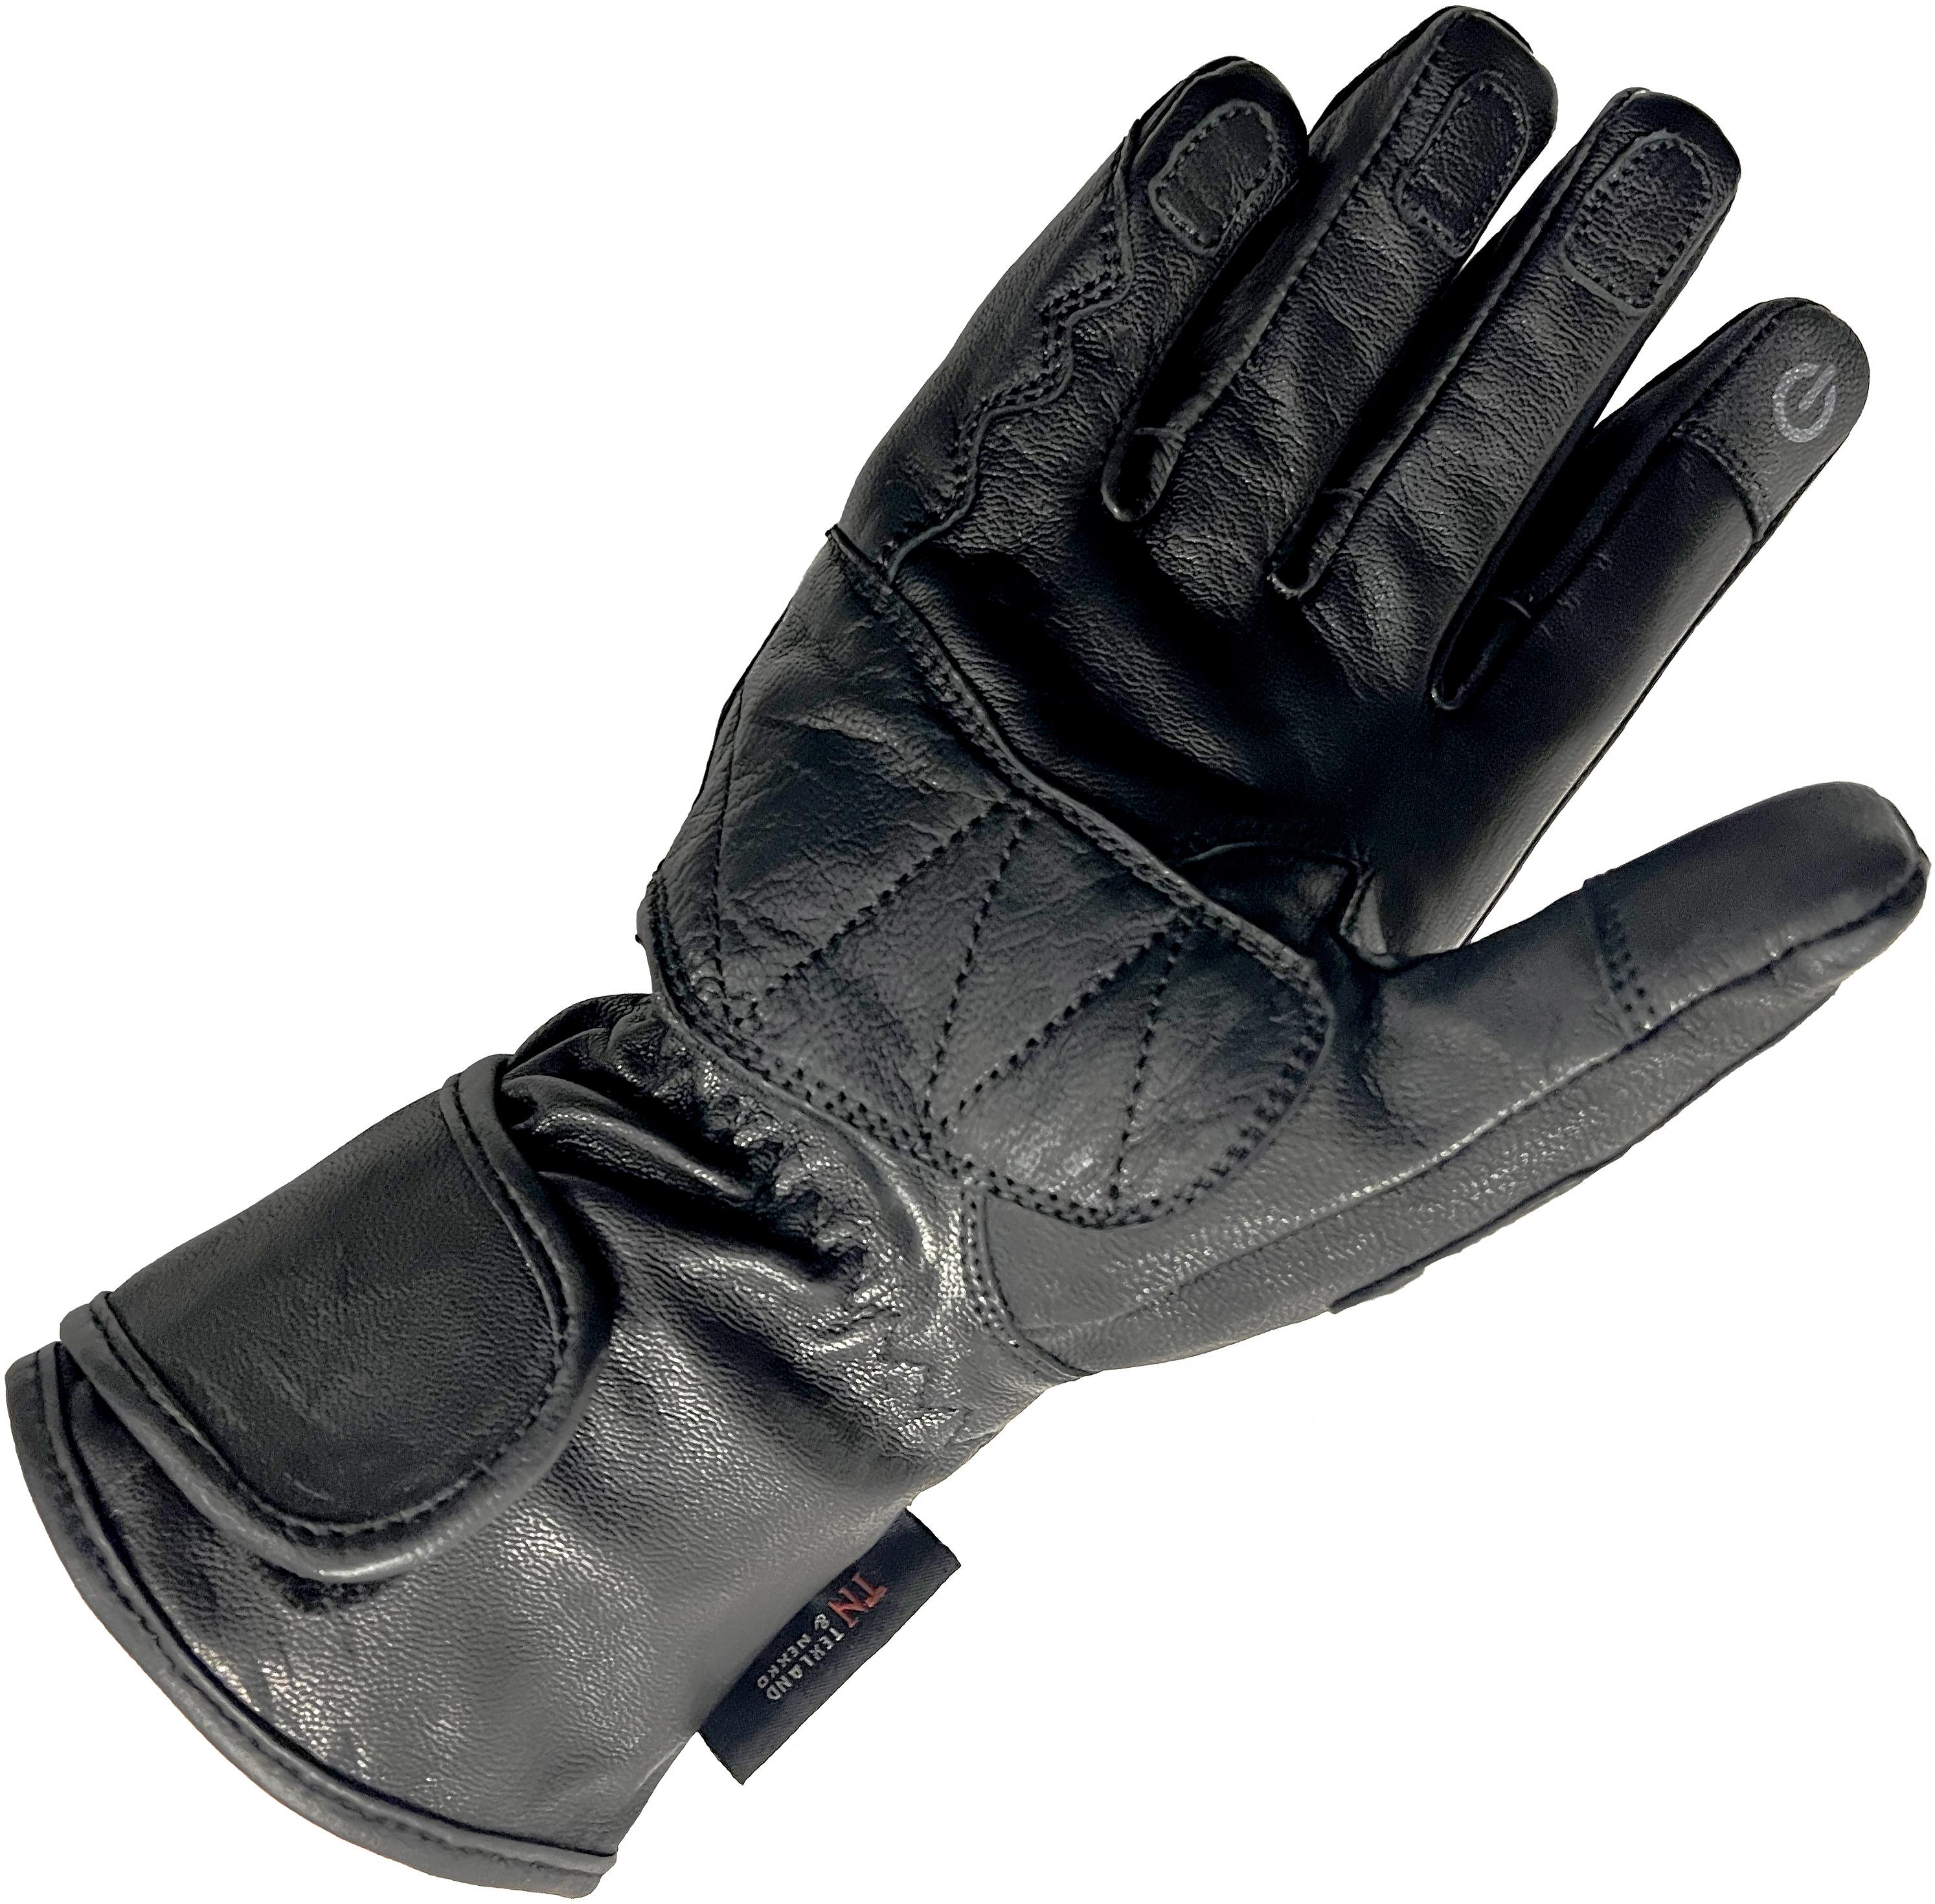 Richa Waterproof Racing Motorcycle Gloves - Black, Large, X Large